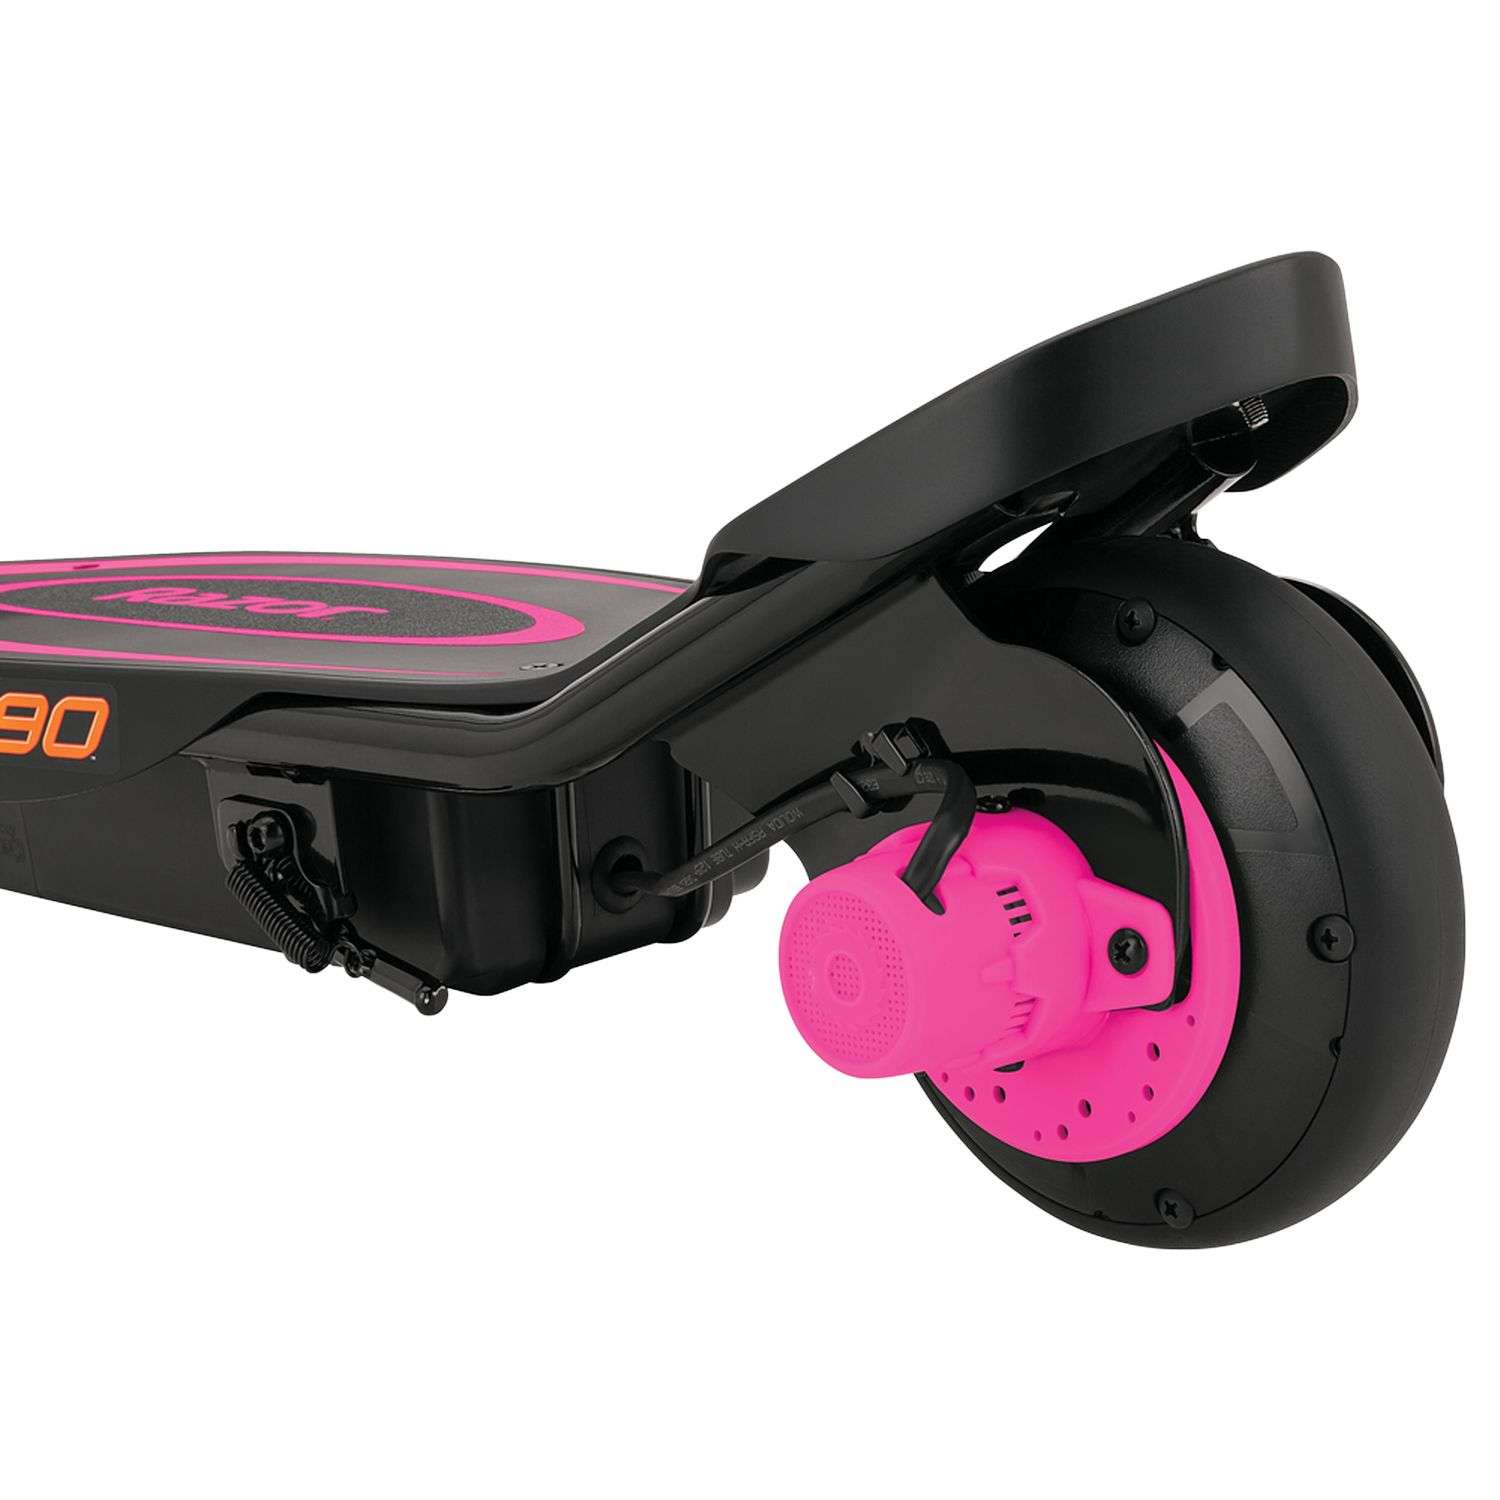 Электросамокат для детей RAZOR Power Core E90 розовый детский электрический с запасом хода до 90 минут - фото 7